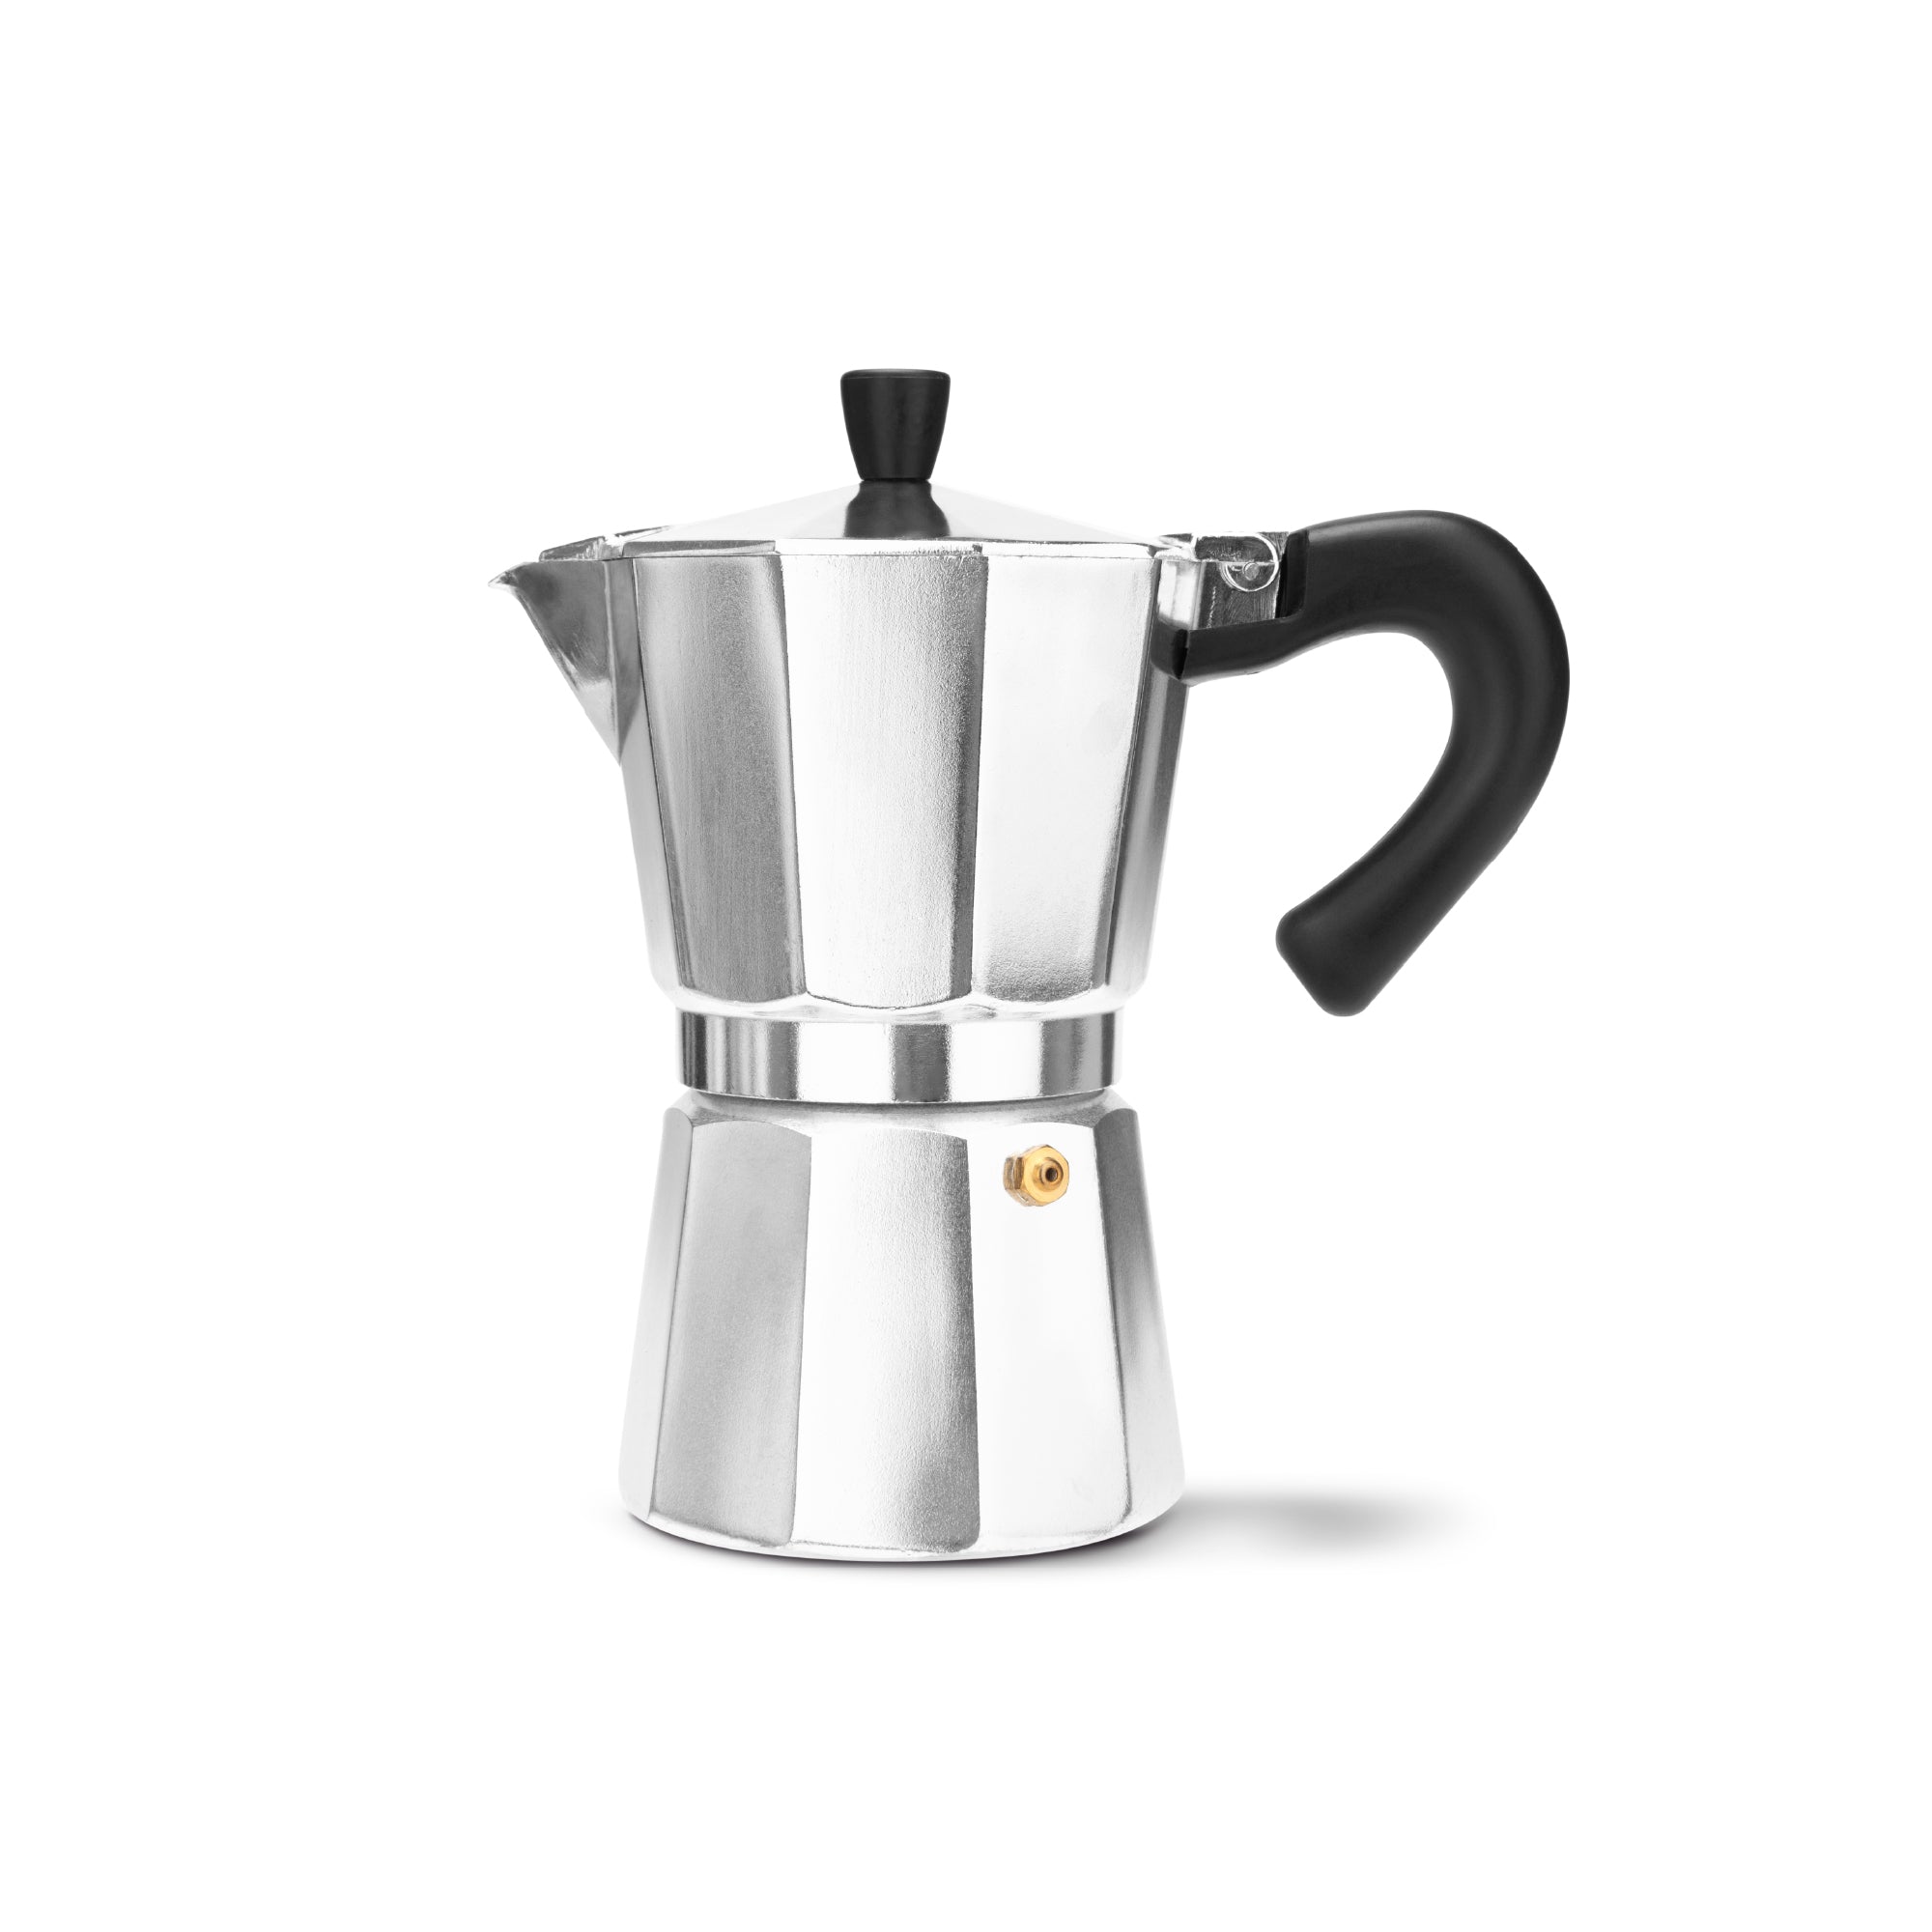 https://cdn.shopify.com/s/files/1/0293/4380/9620/products/espressoworks-six-cup-moka-pot-stovetop-espresso-maker_2000x.jpg?v=1604993336